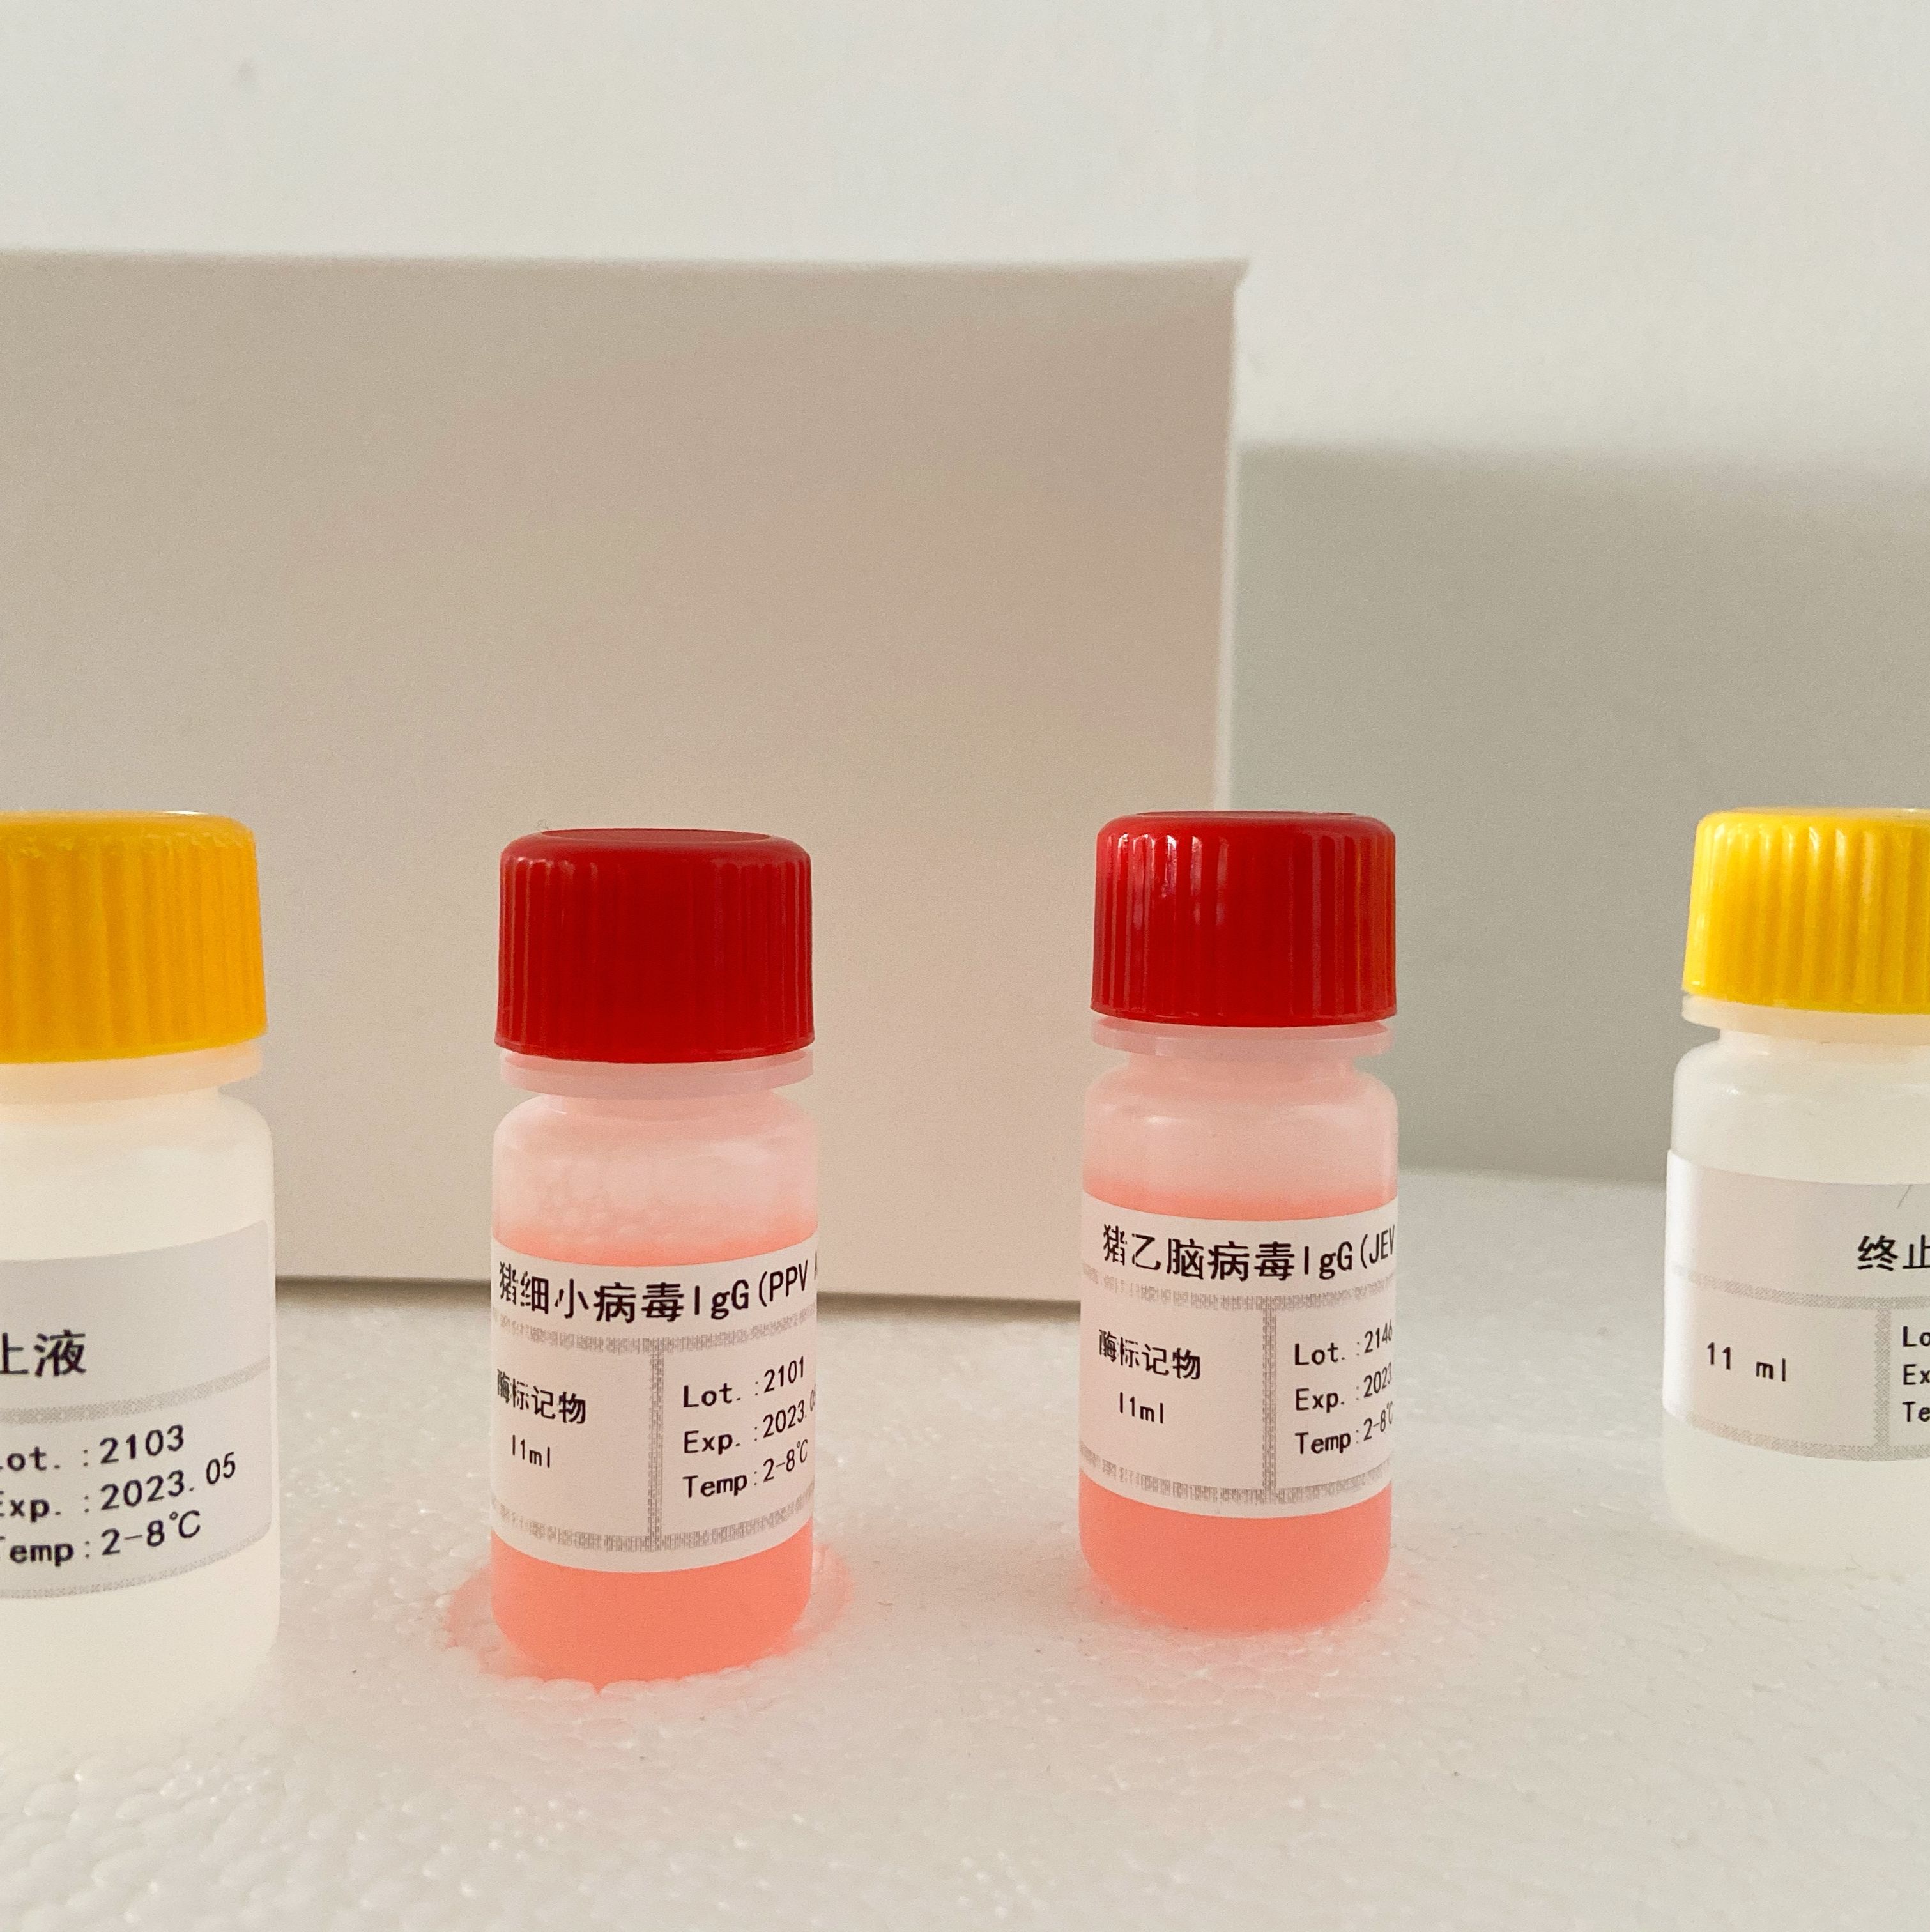 人异常凝血酶原(APT)ELISA试剂盒